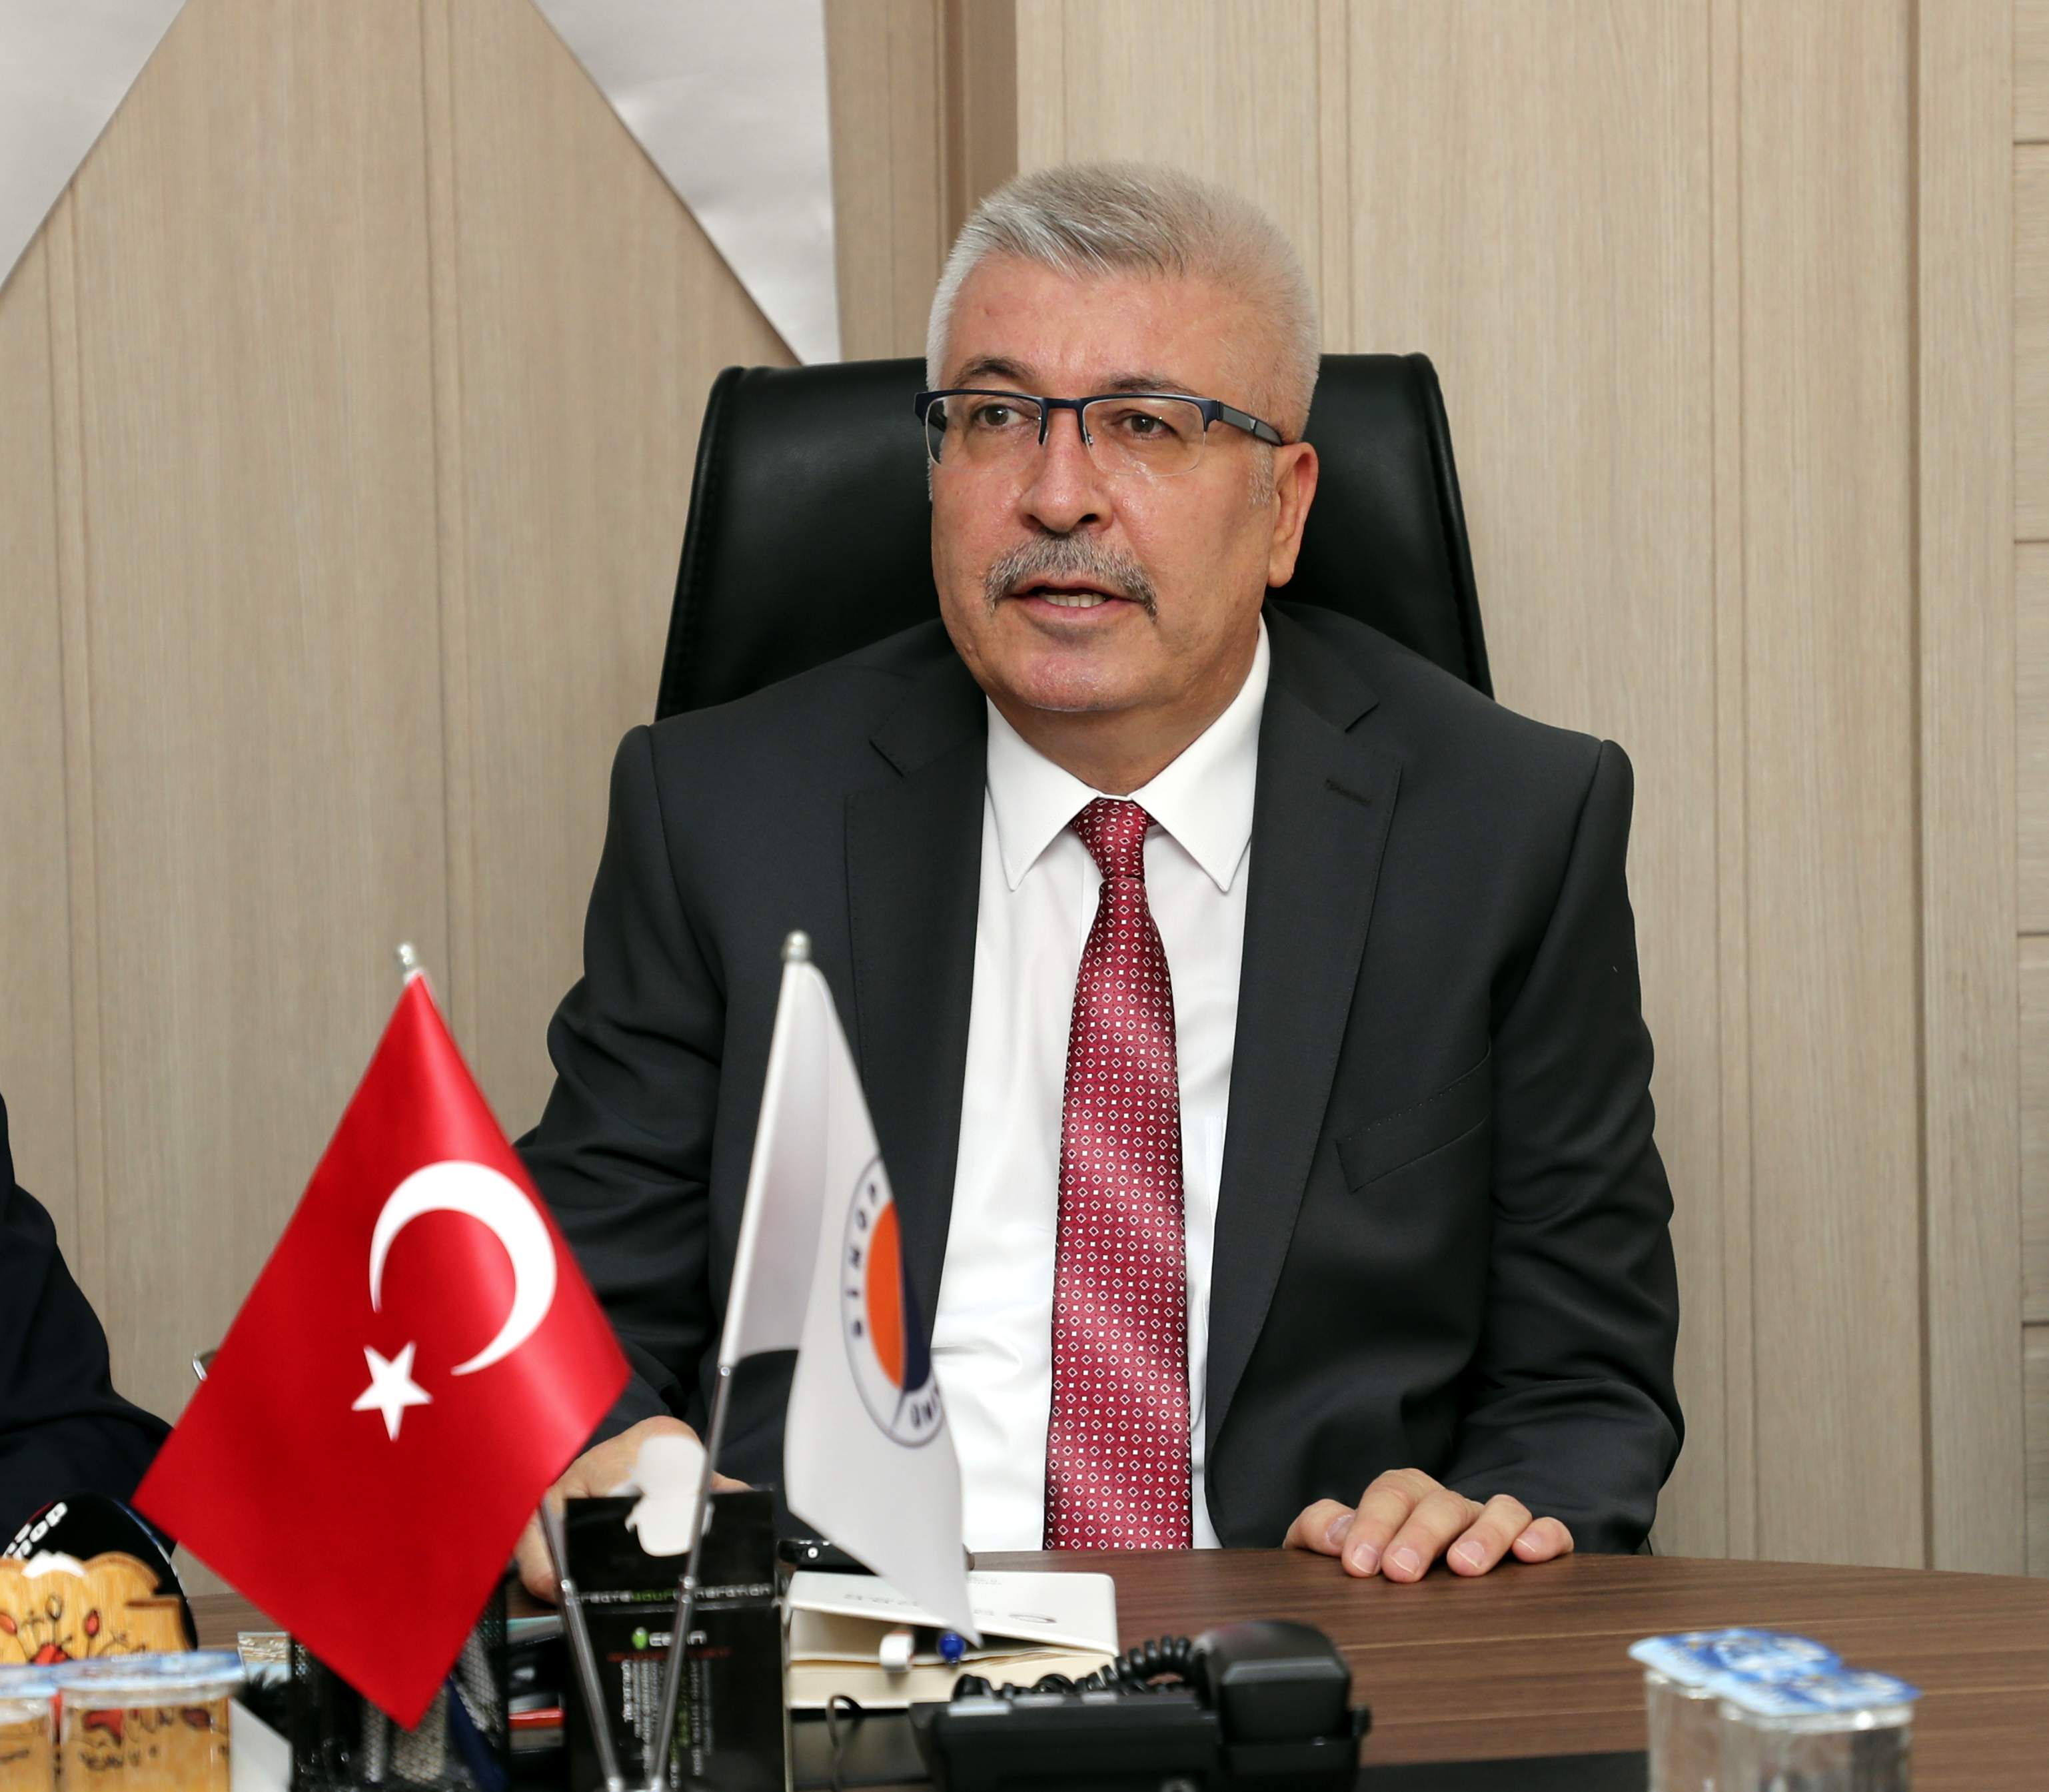 Sinop Üniversitesi Rektörü Prof. Dr. Şakir Taşdemir görevi devraldı